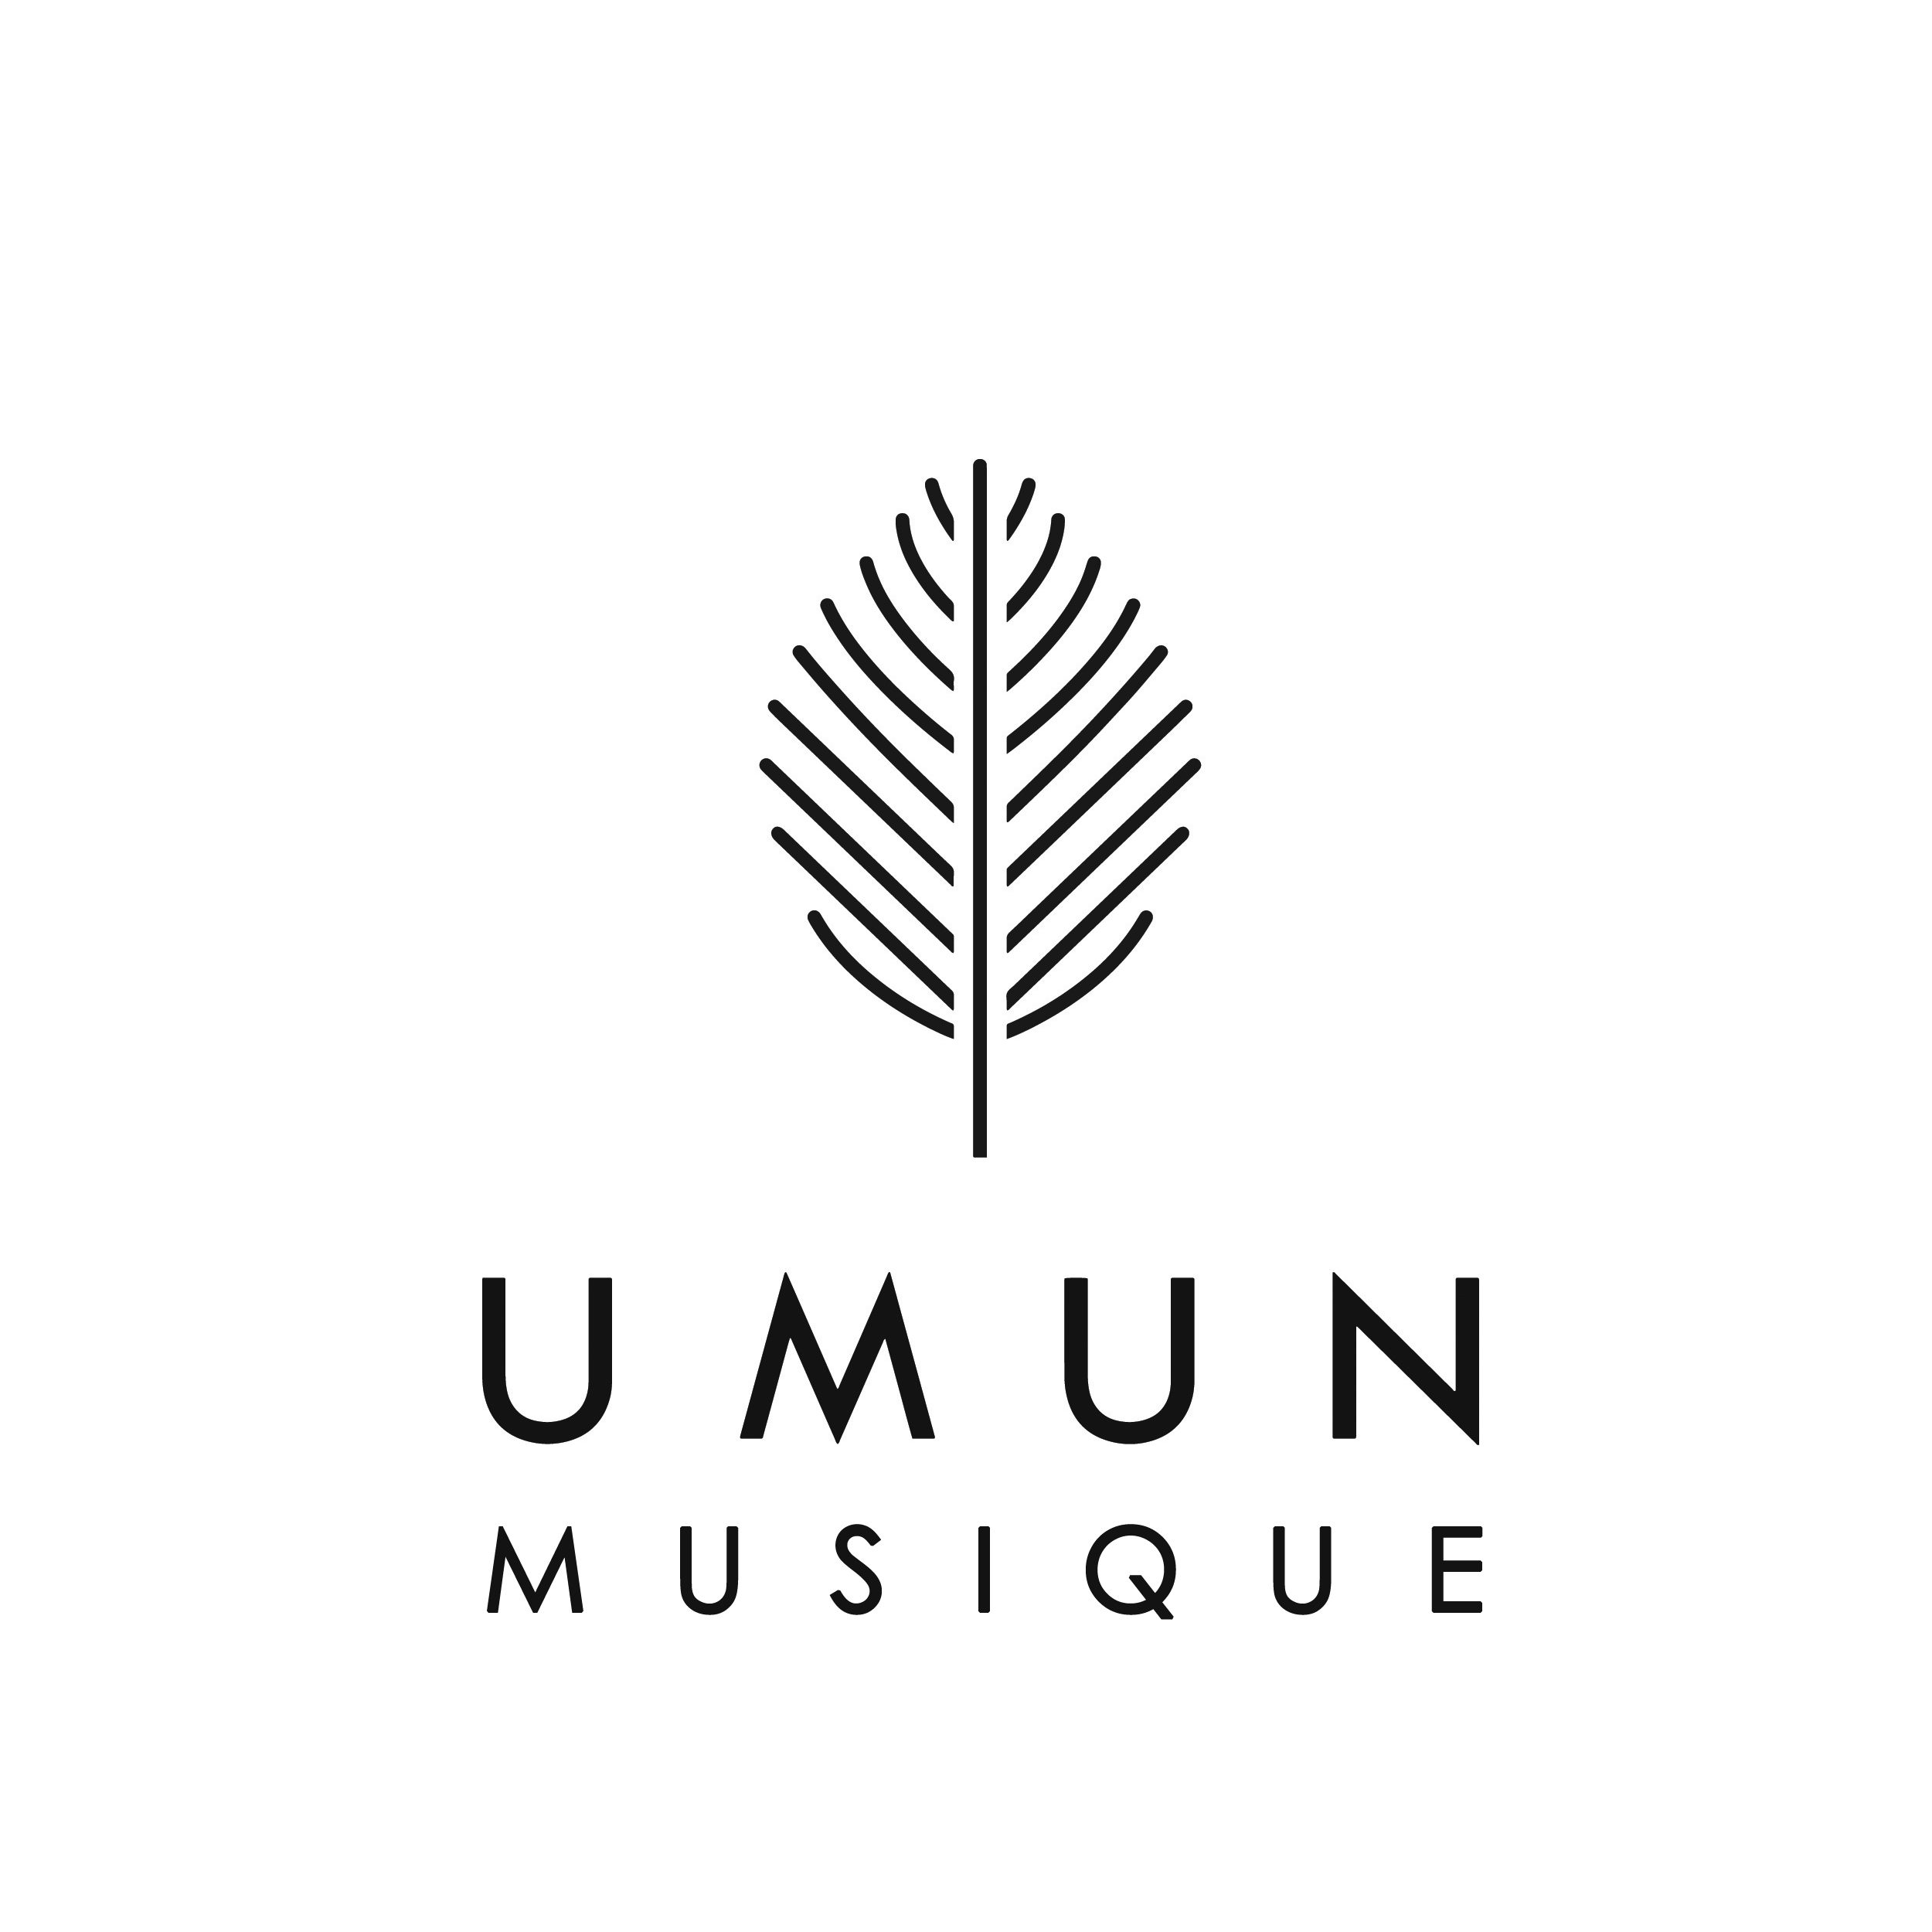 UMUN MUSIQUE